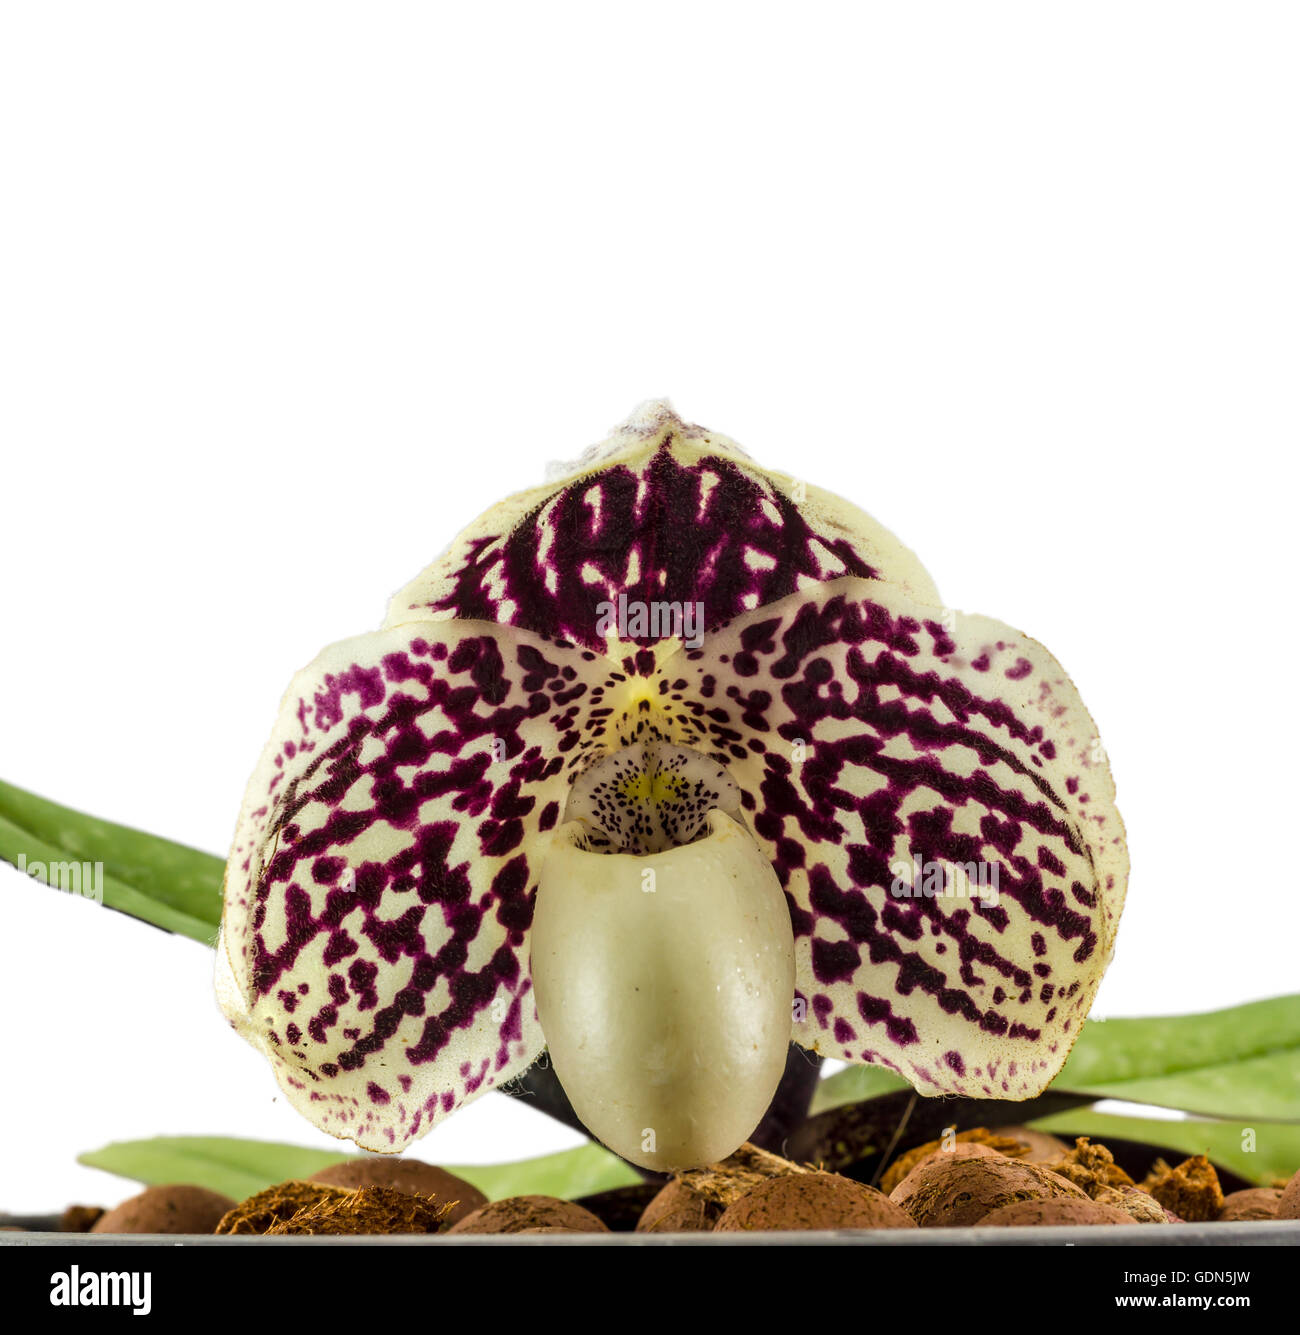 Orchid name ' Paphiopedilum godefroyae ' on white background Stock Photo